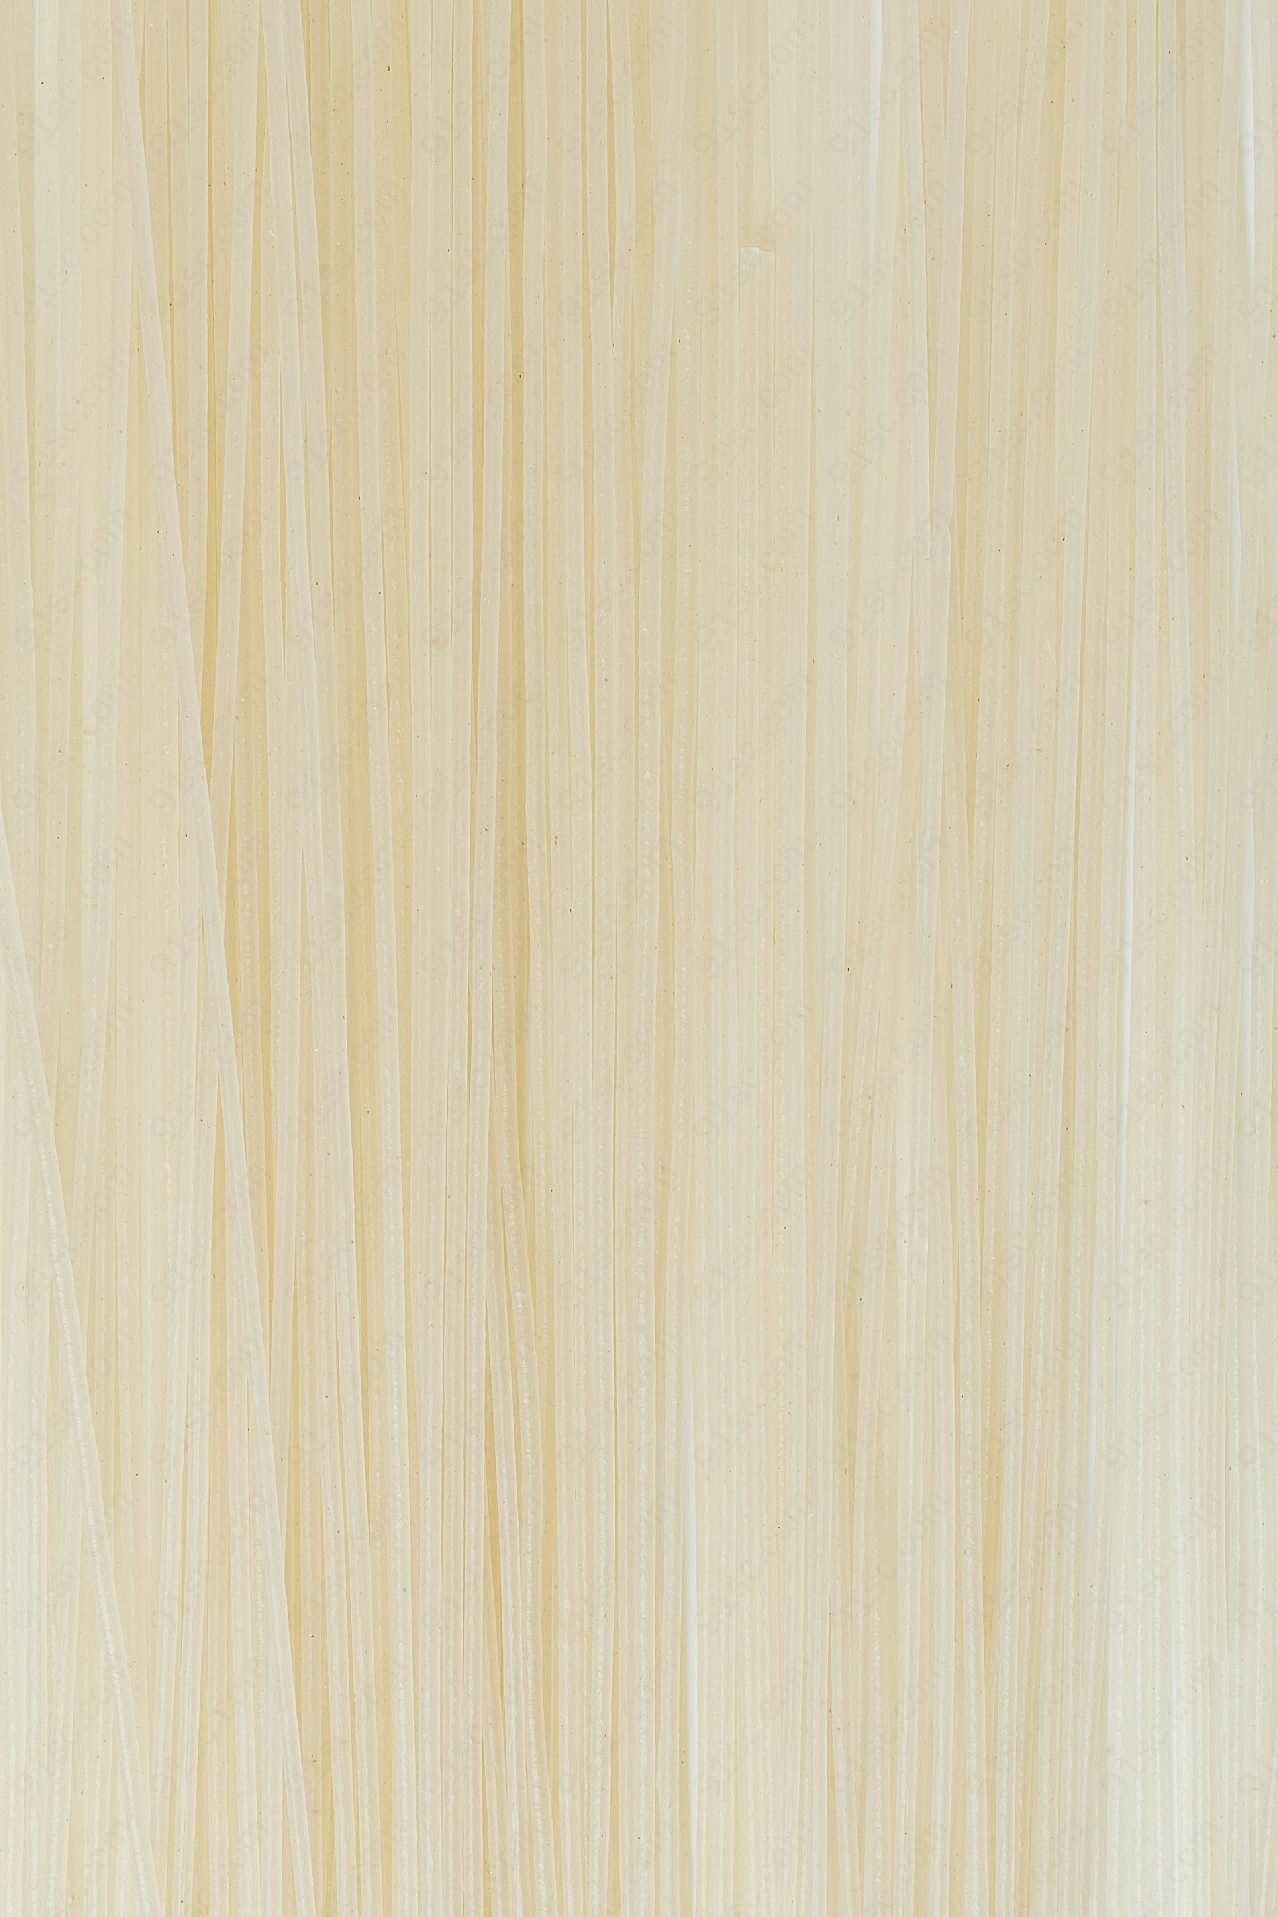 浅色木板图片木纹背景